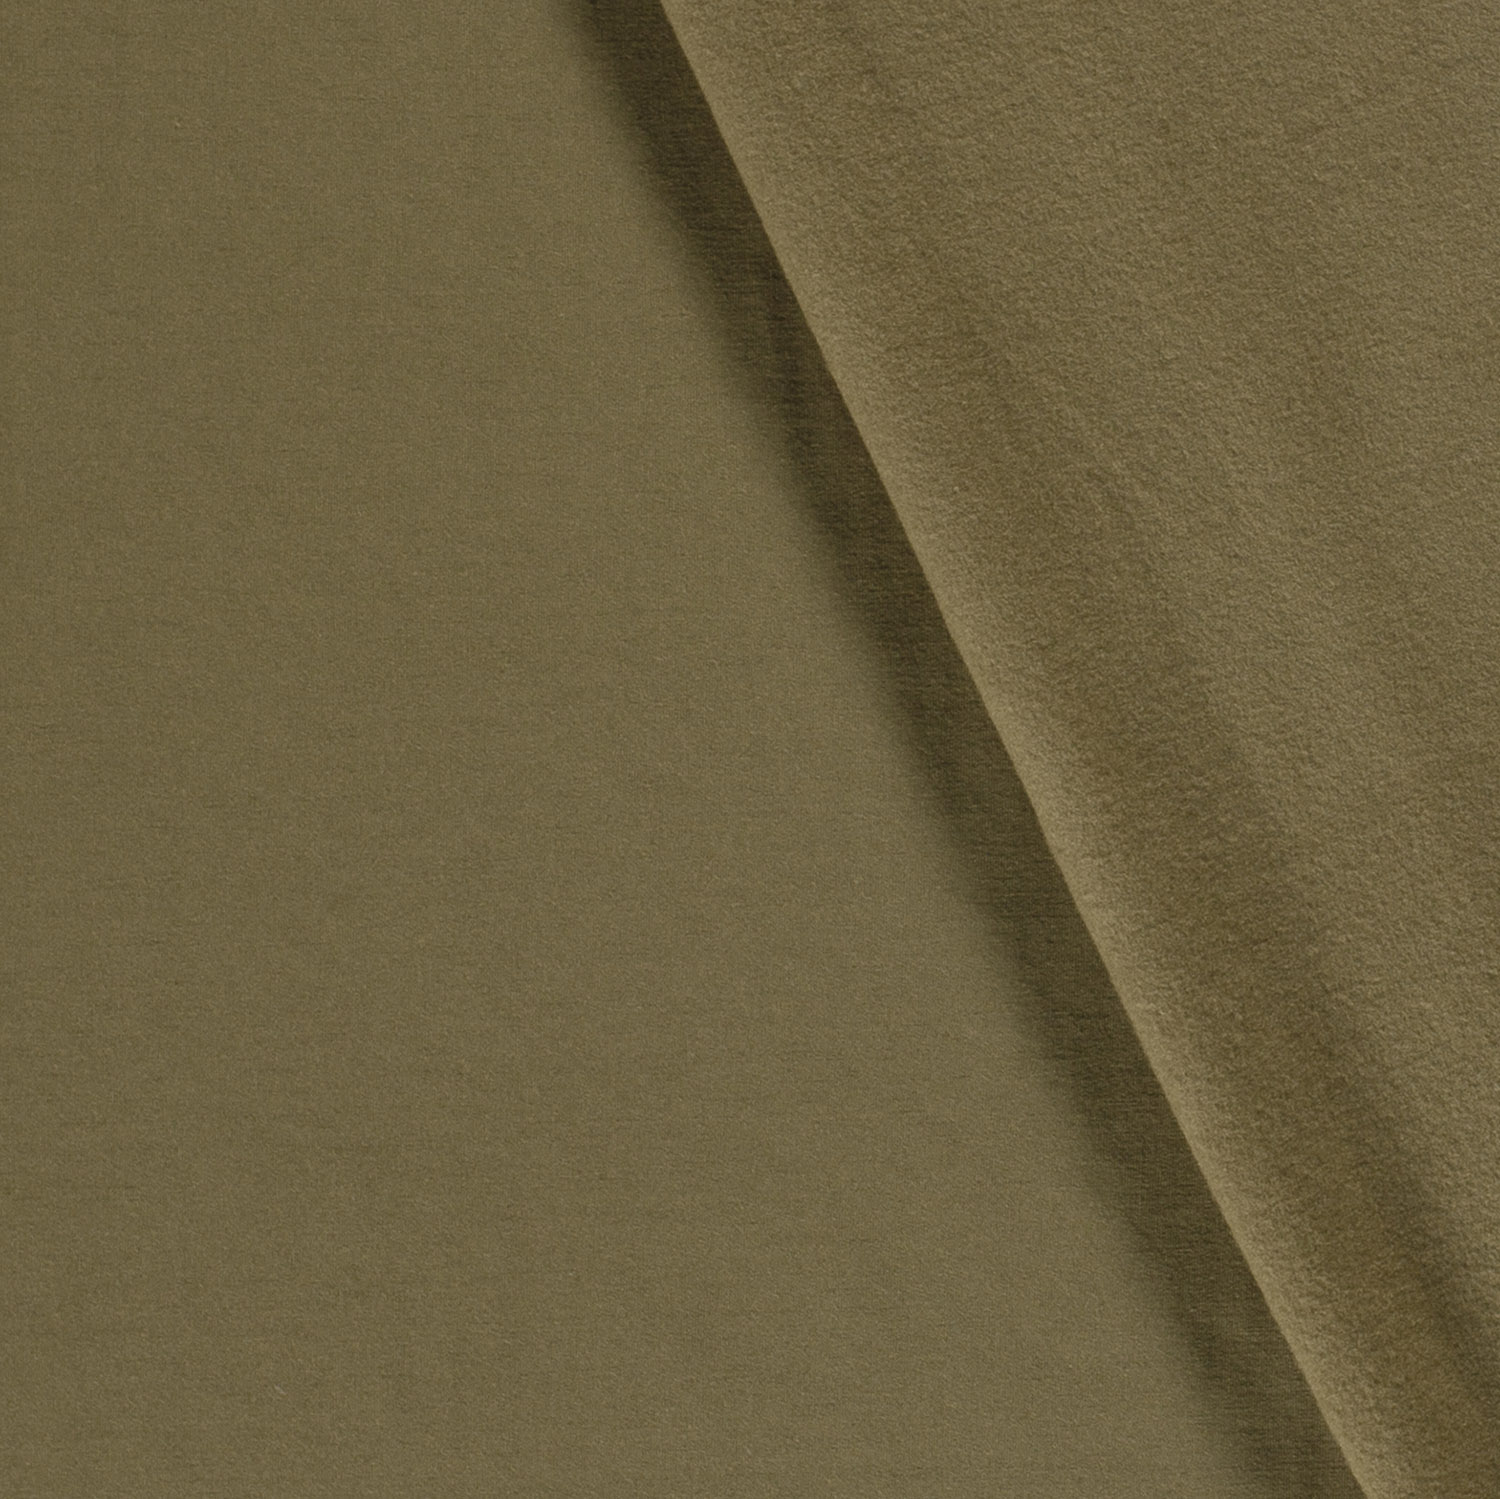 Deze jersey effen kaki groen kan onder andere gebruikt worden voor het maken van kleding, jurken, rokken, t-shirts, topjes, en meer...